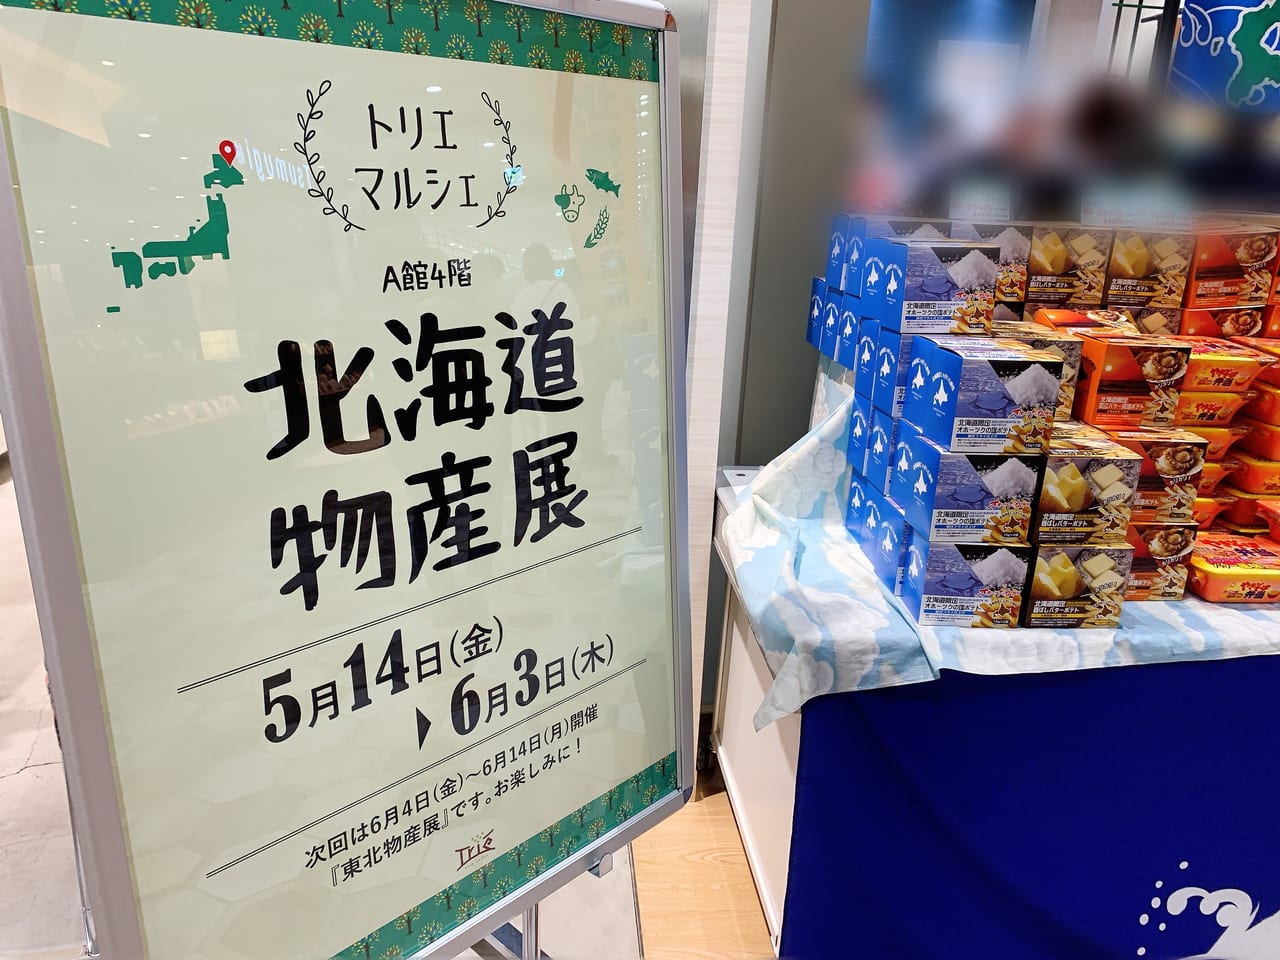 トリエ京王調布で北海道物産展が開催されています。